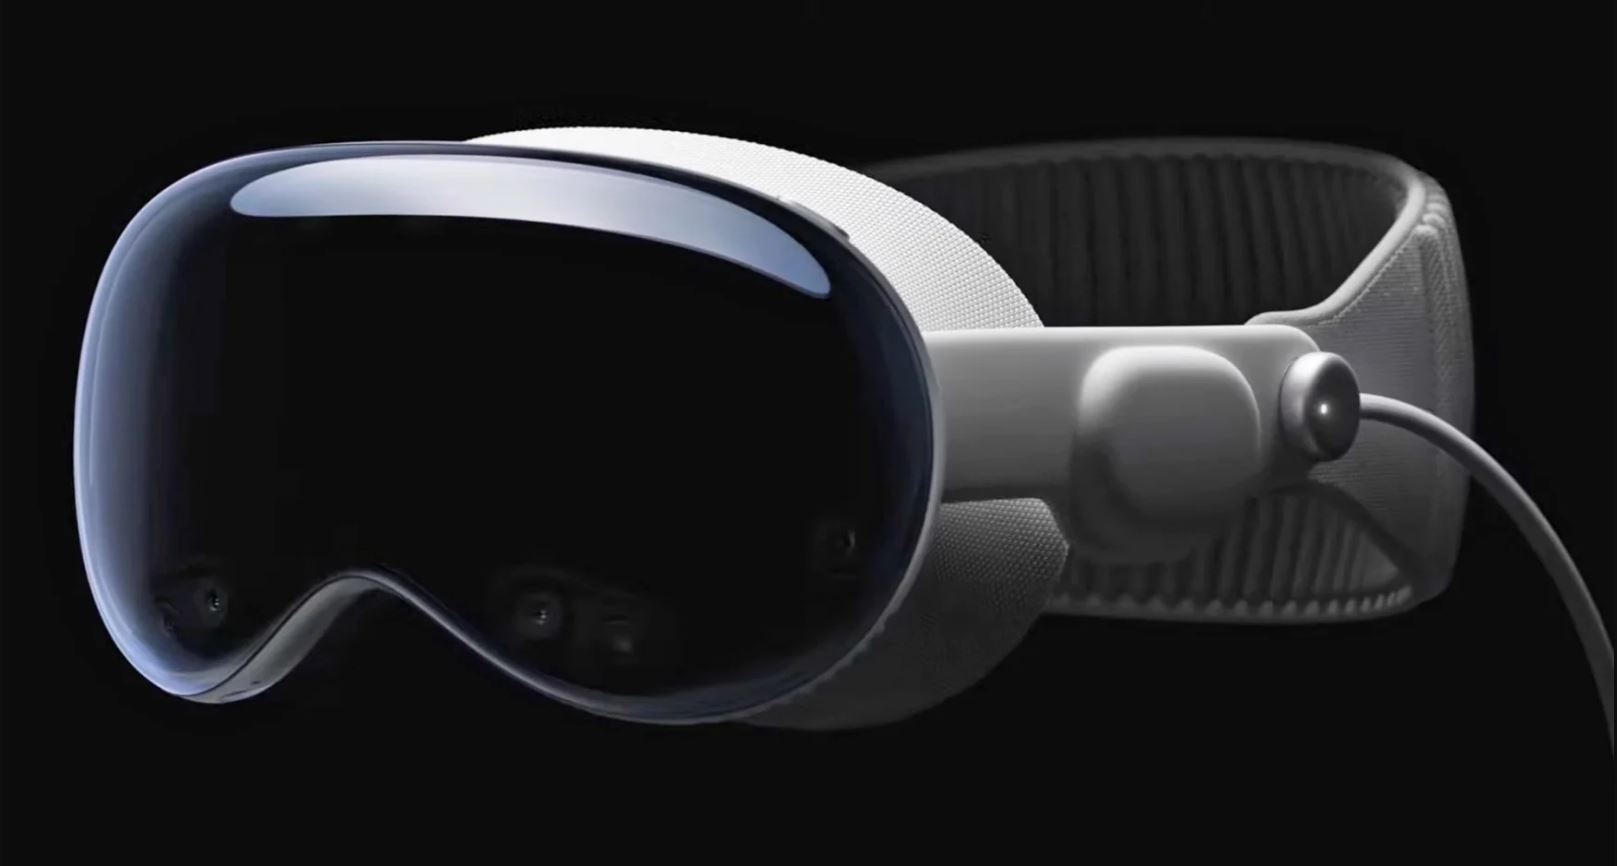 Perkenalkan Apple Vision Pro, Kacamata AR Canggih yang Dibanderol Rp51 Juta